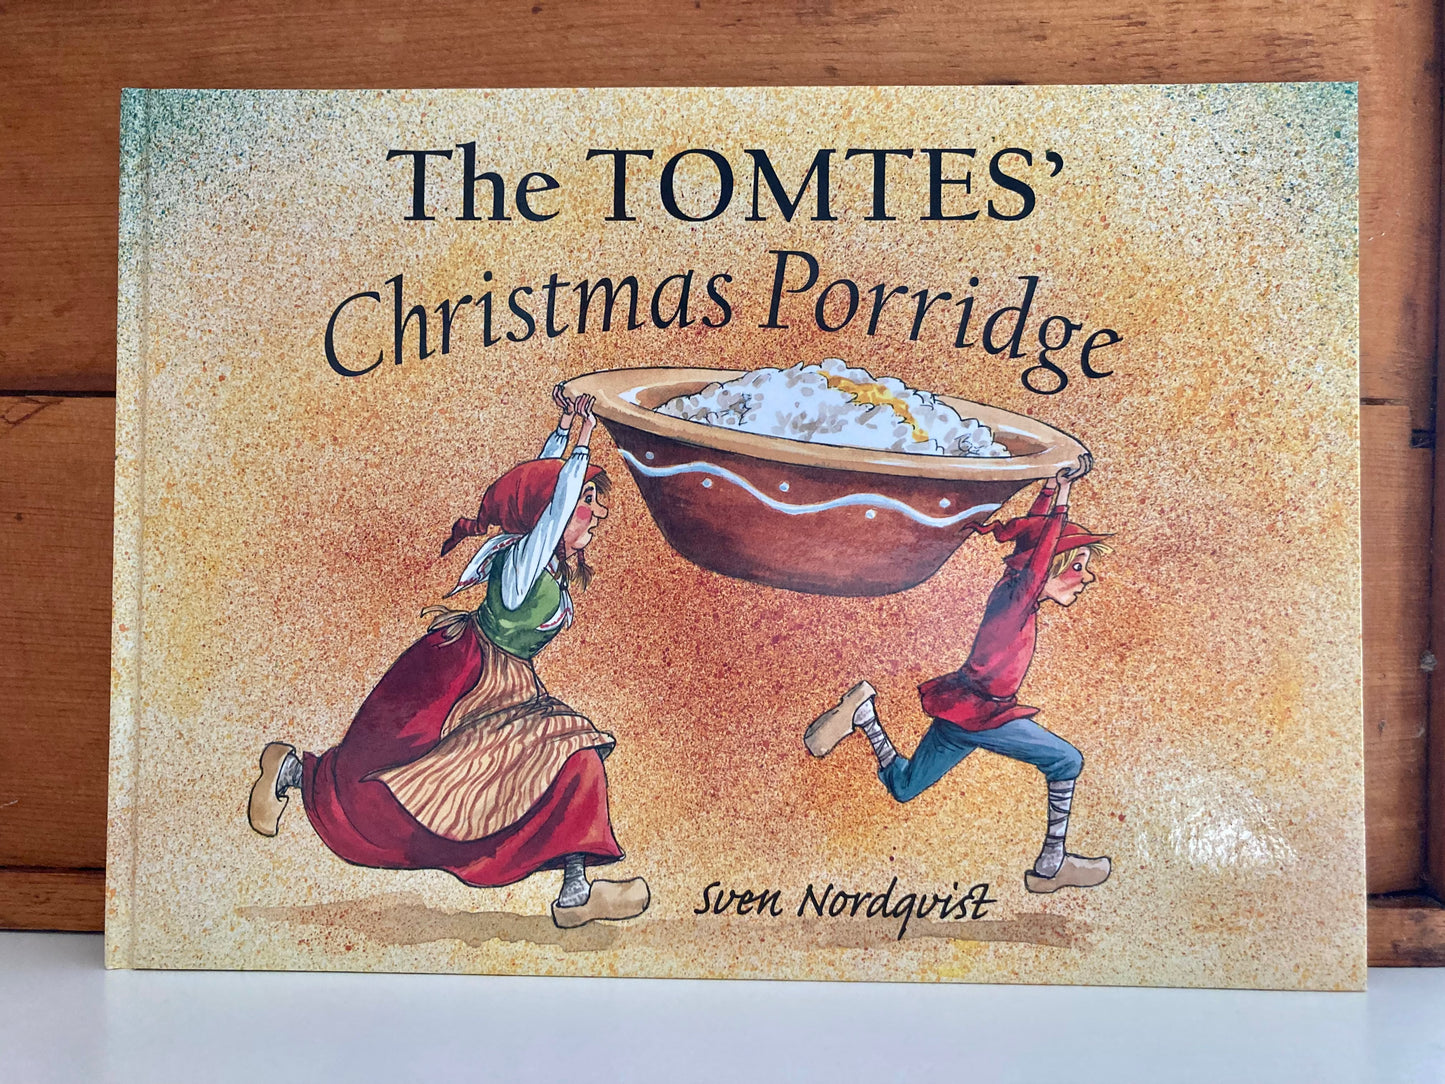 Livre d'images pour enfants - LE PORRIDGE DE NOËL DES TOMTES